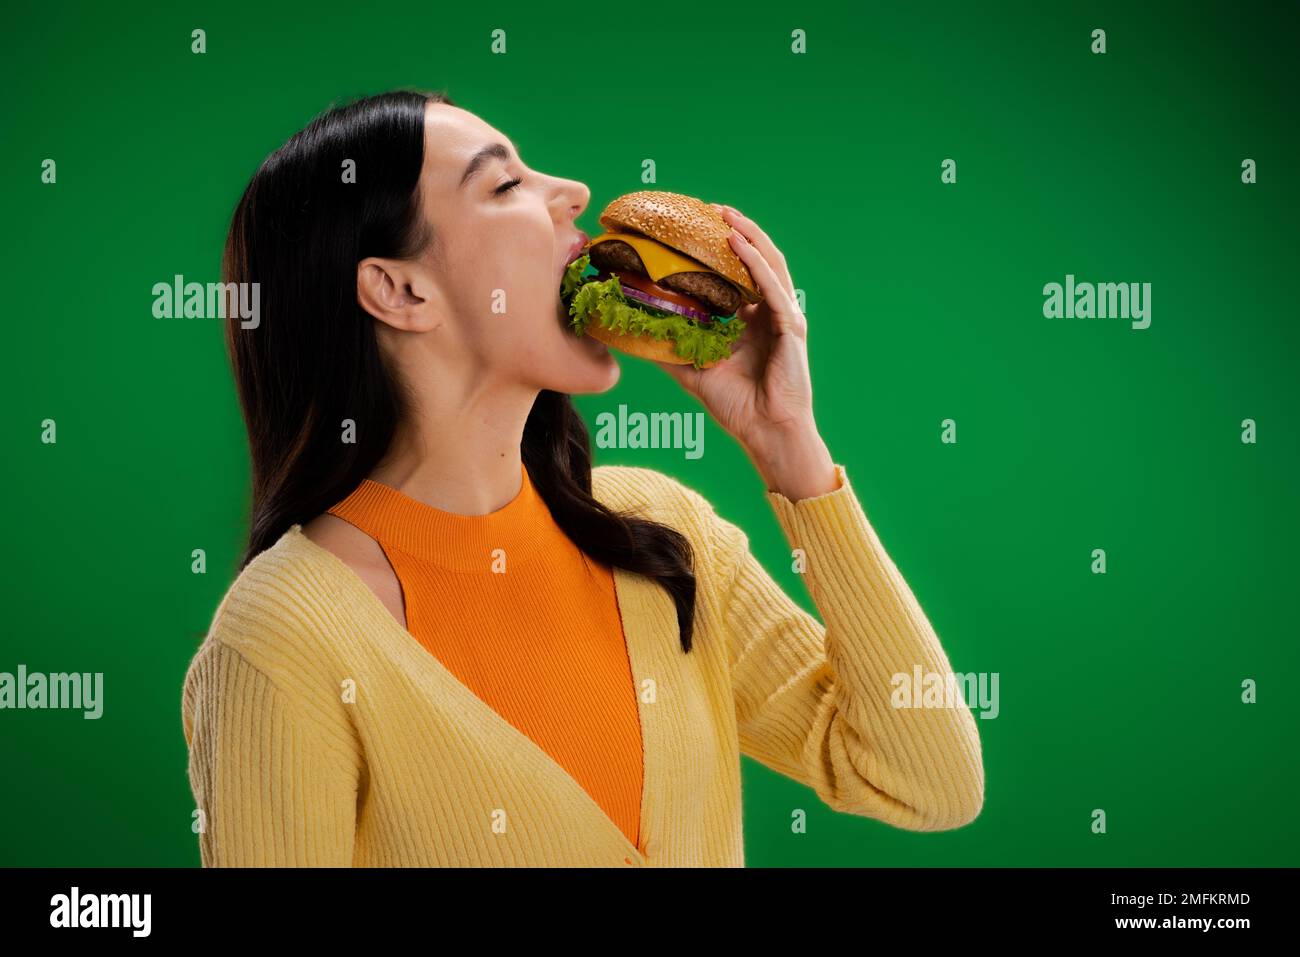 bruna donna affamata mangiare delizioso hamburger con carne e formaggio isolato sul verde, immagine stock Foto Stock